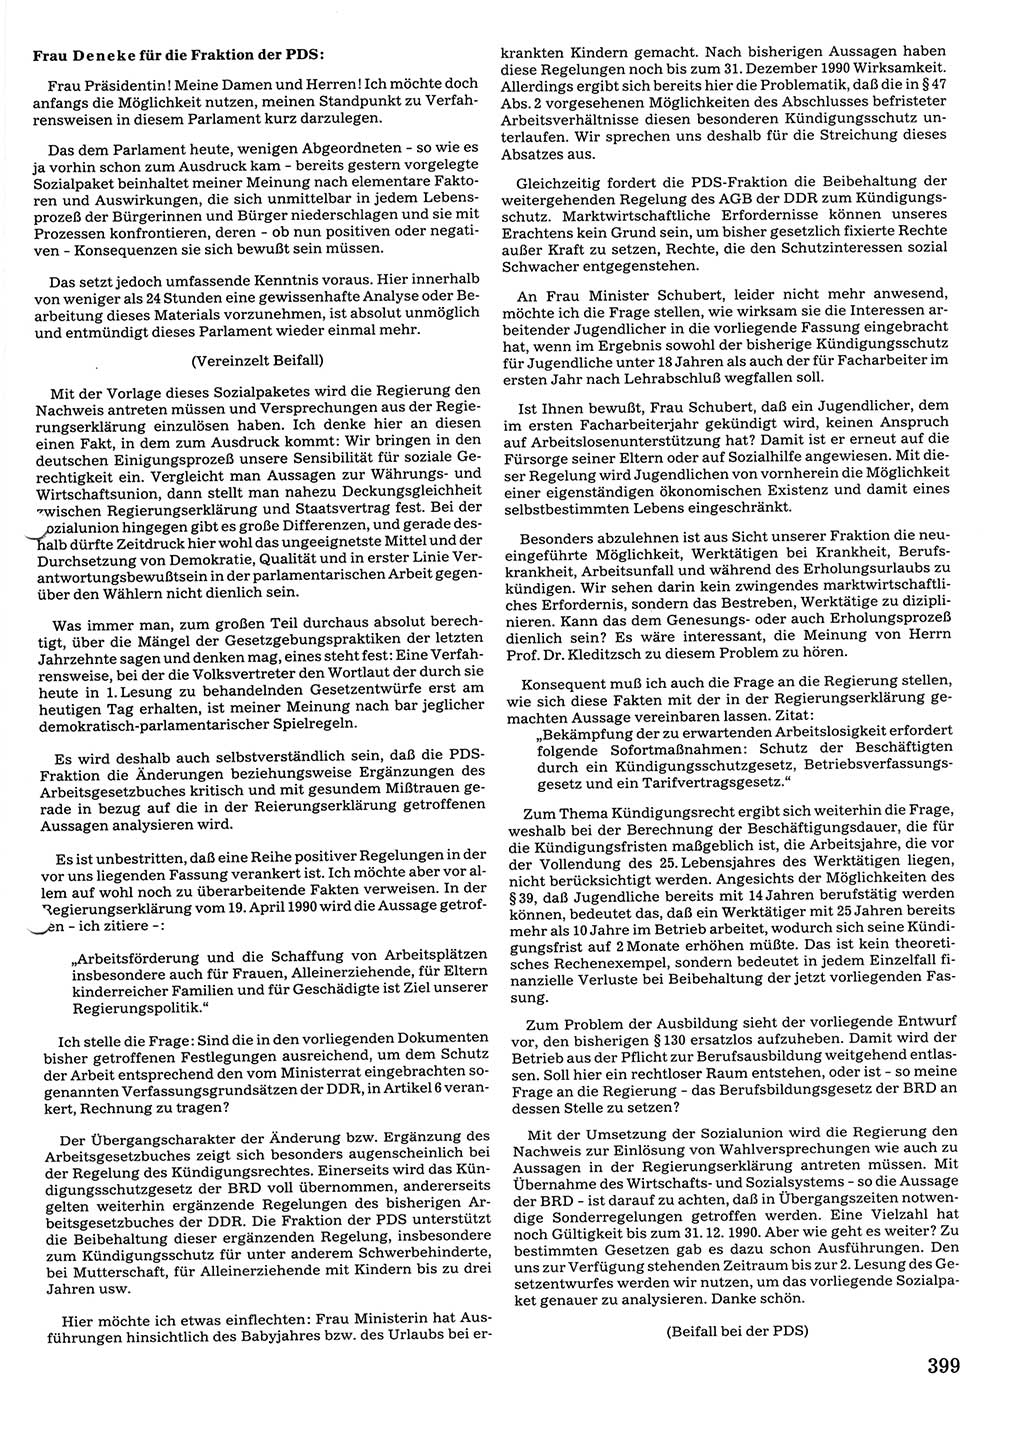 Tagungen der Volkskammer (VK) der Deutschen Demokratischen Republik (DDR), 10. Wahlperiode 1990, Seite 399 (VK. DDR 10. WP. 1990, Prot. Tg. 1-38, 5.4.-2.10.1990, S. 399)